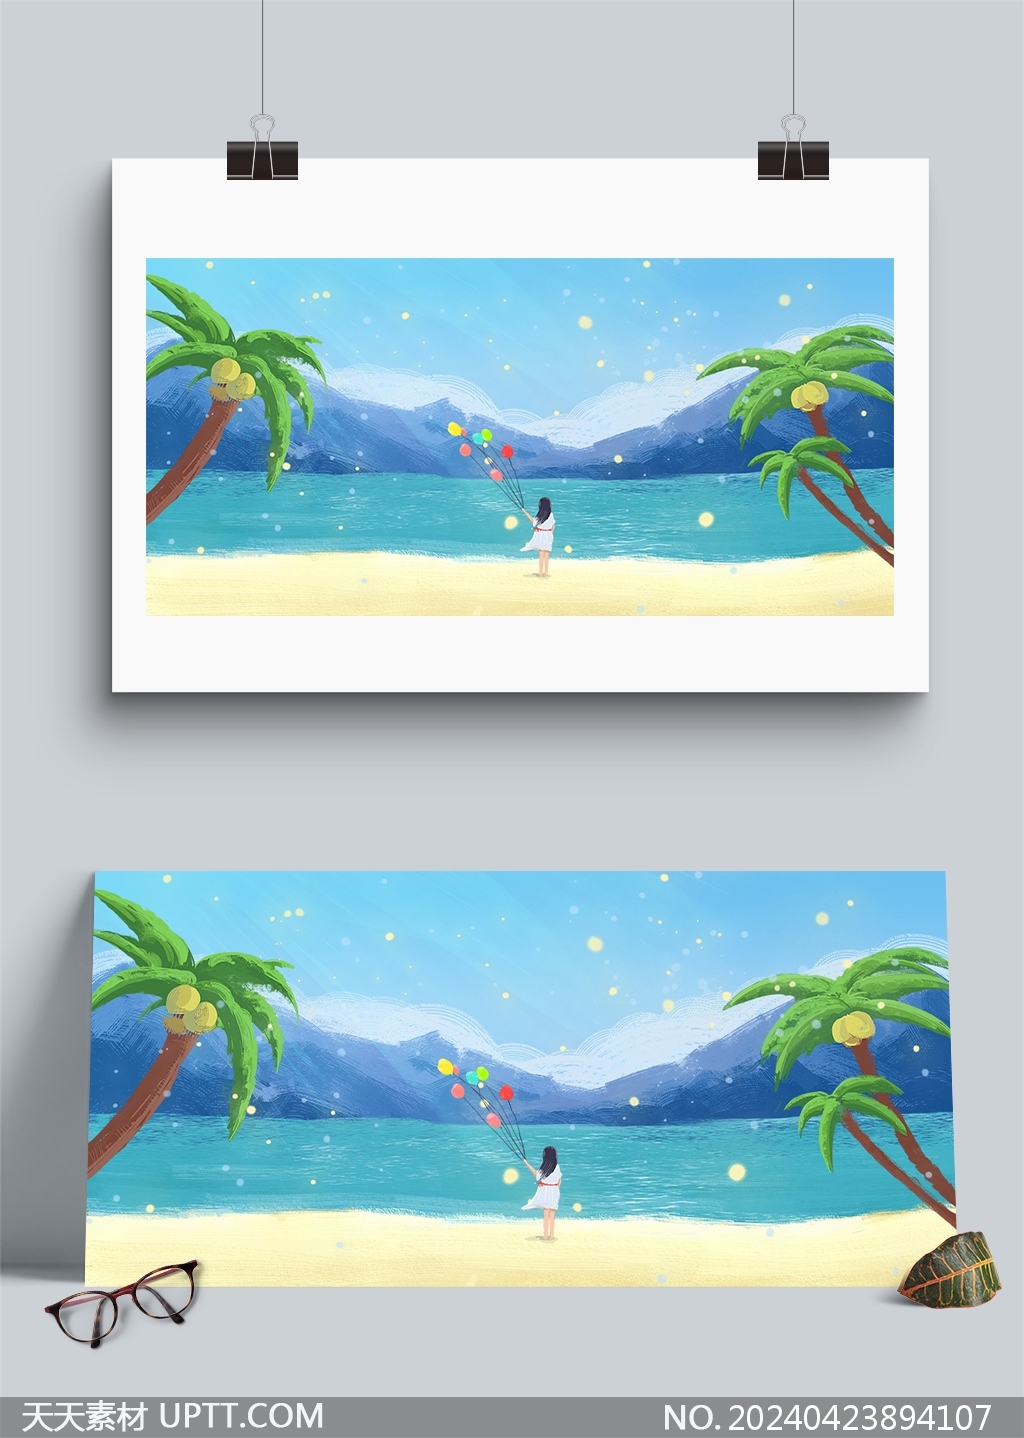 唯美梦幻夏日海边女孩气球椰树沙滩水彩插画背景素材